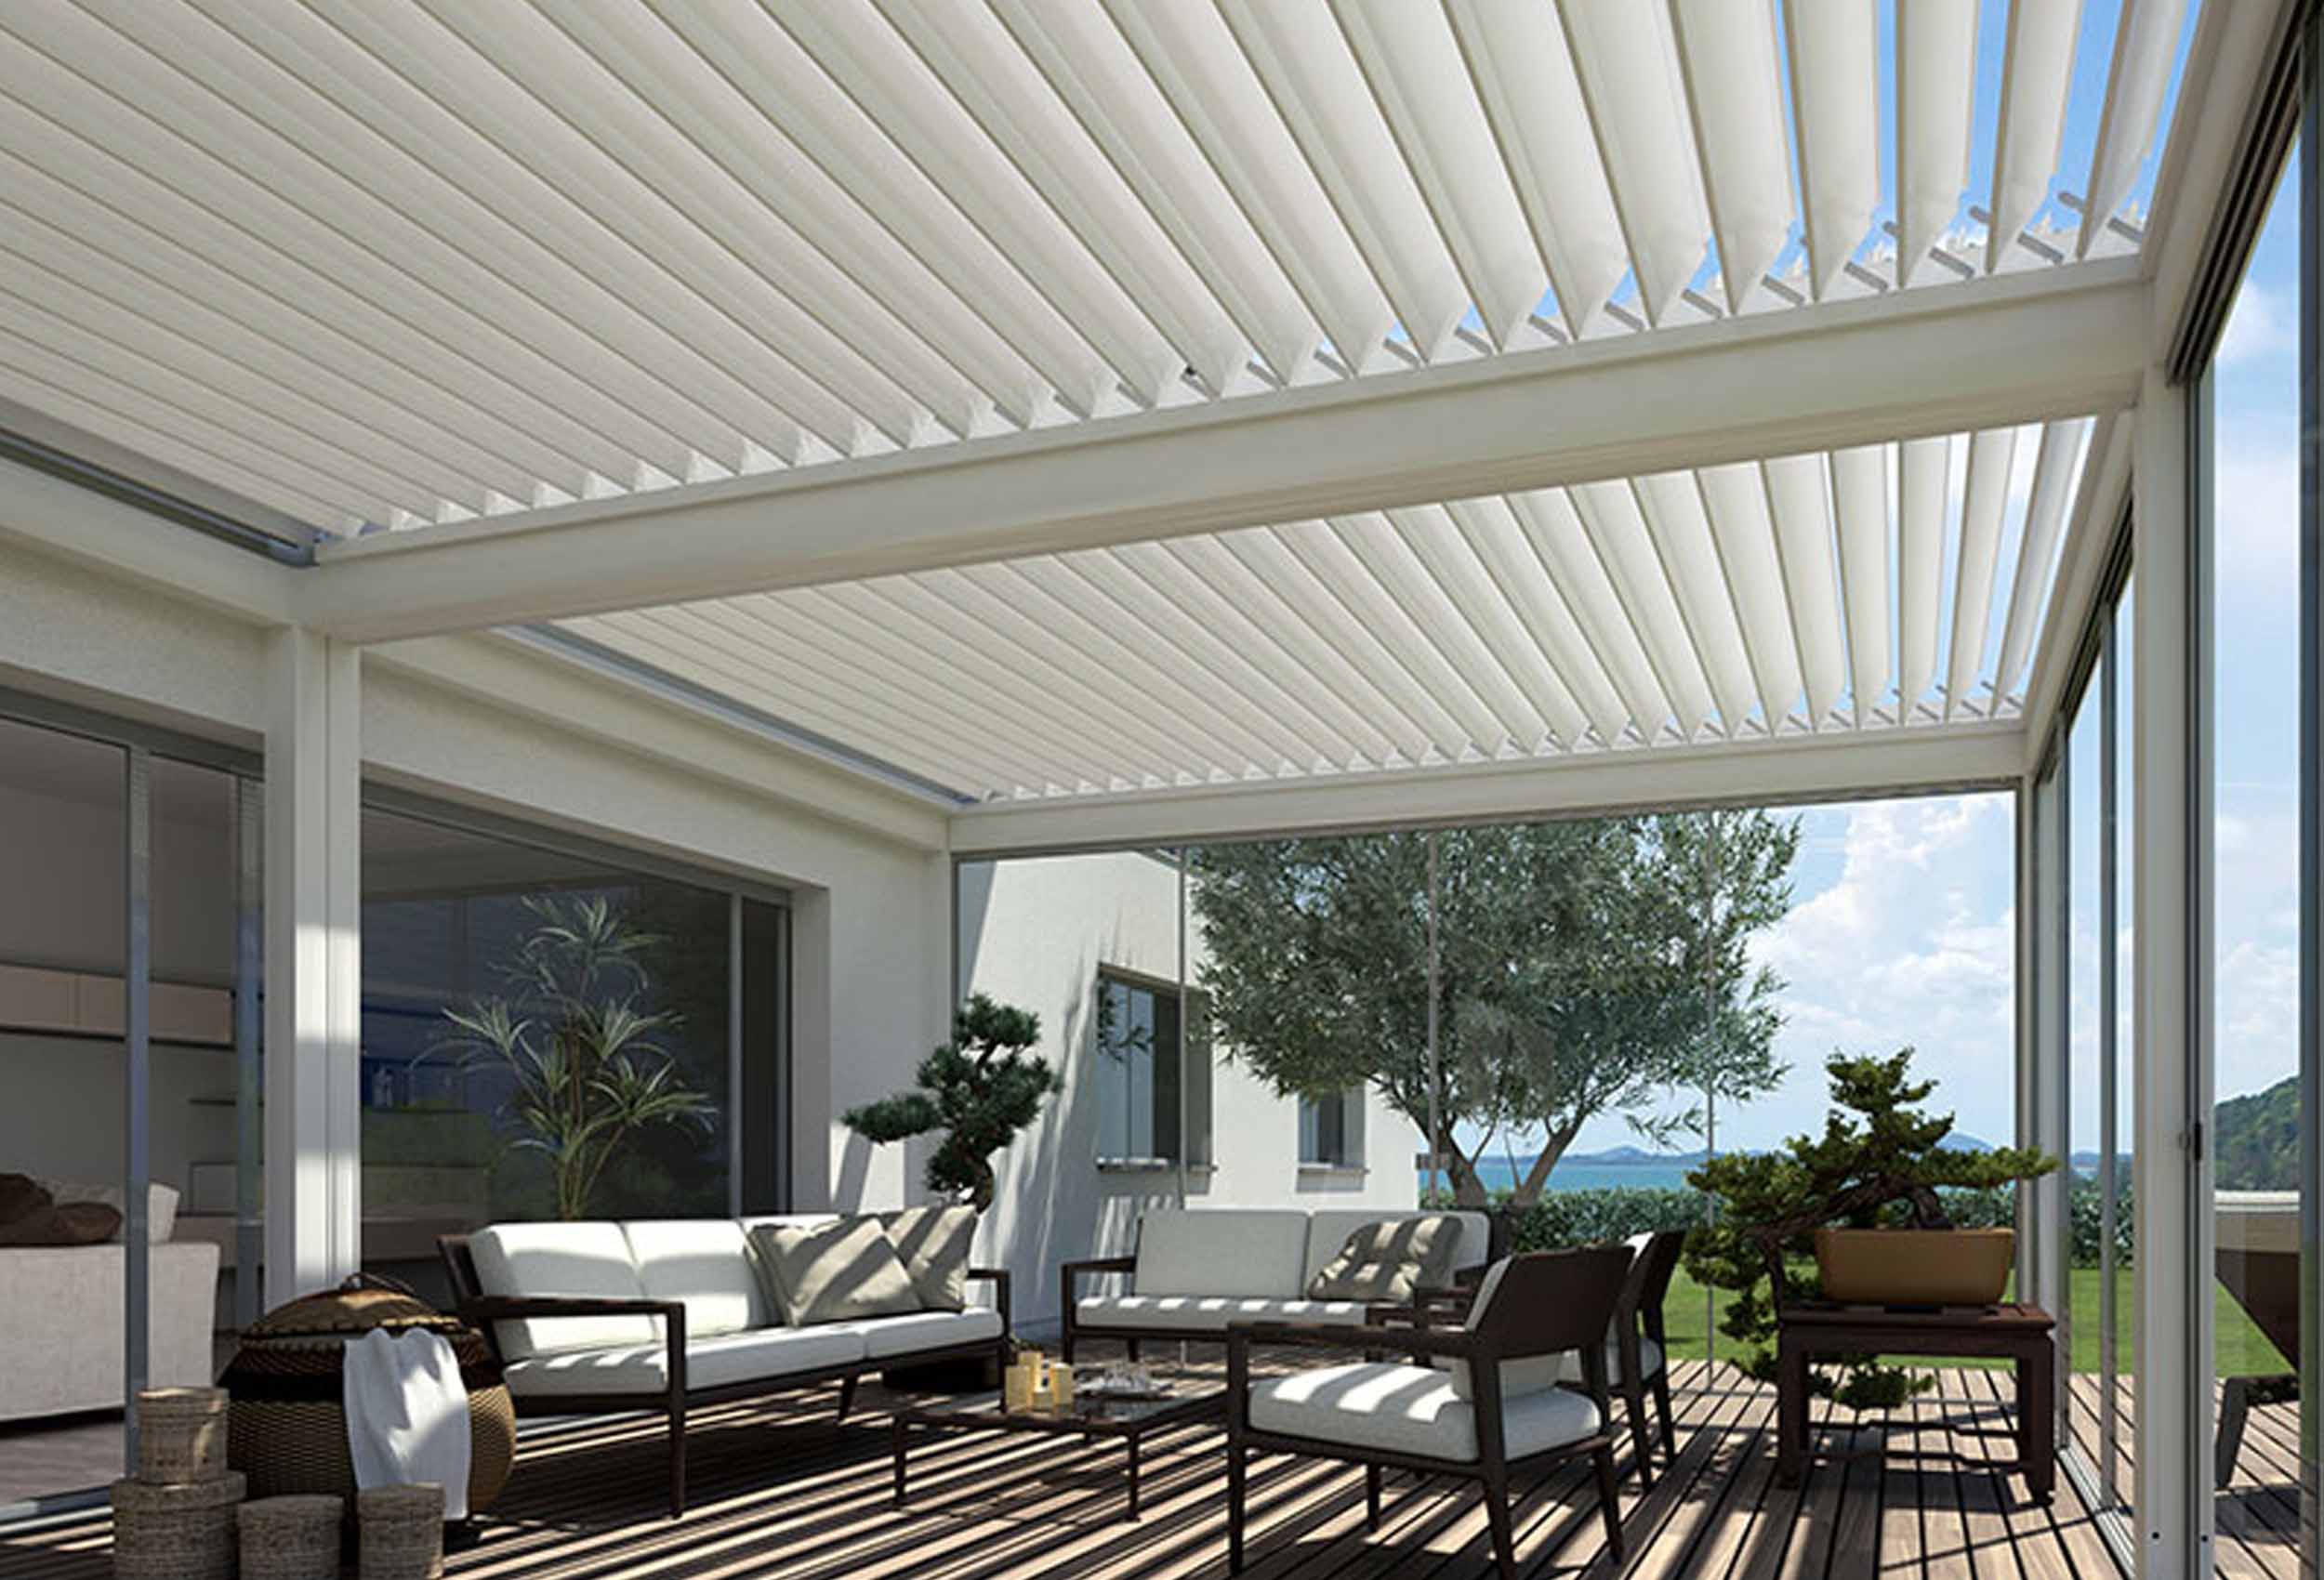 verande-serre-bioclimatiche-fad-studio-architettura-interior-exterior-design-forniti4